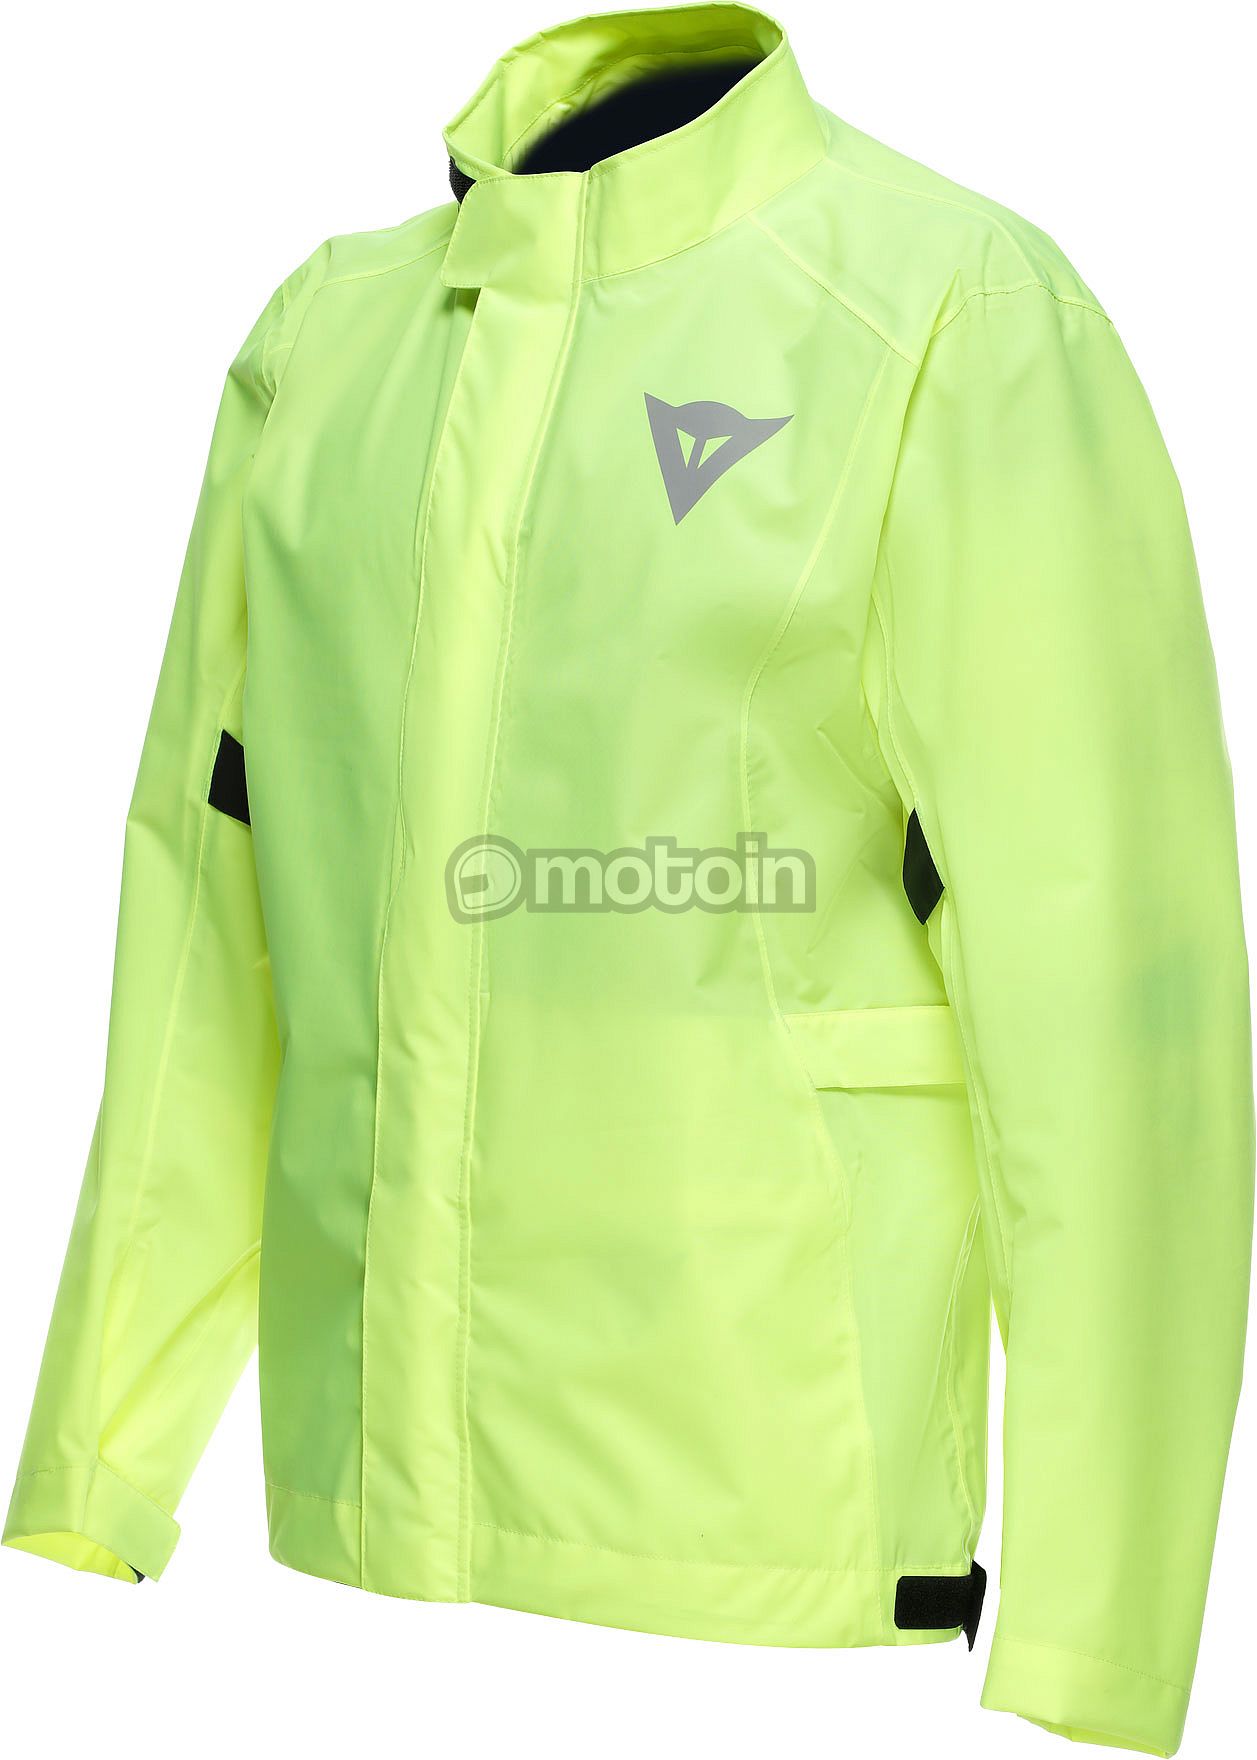 Dainese Ultralight, rain jacket